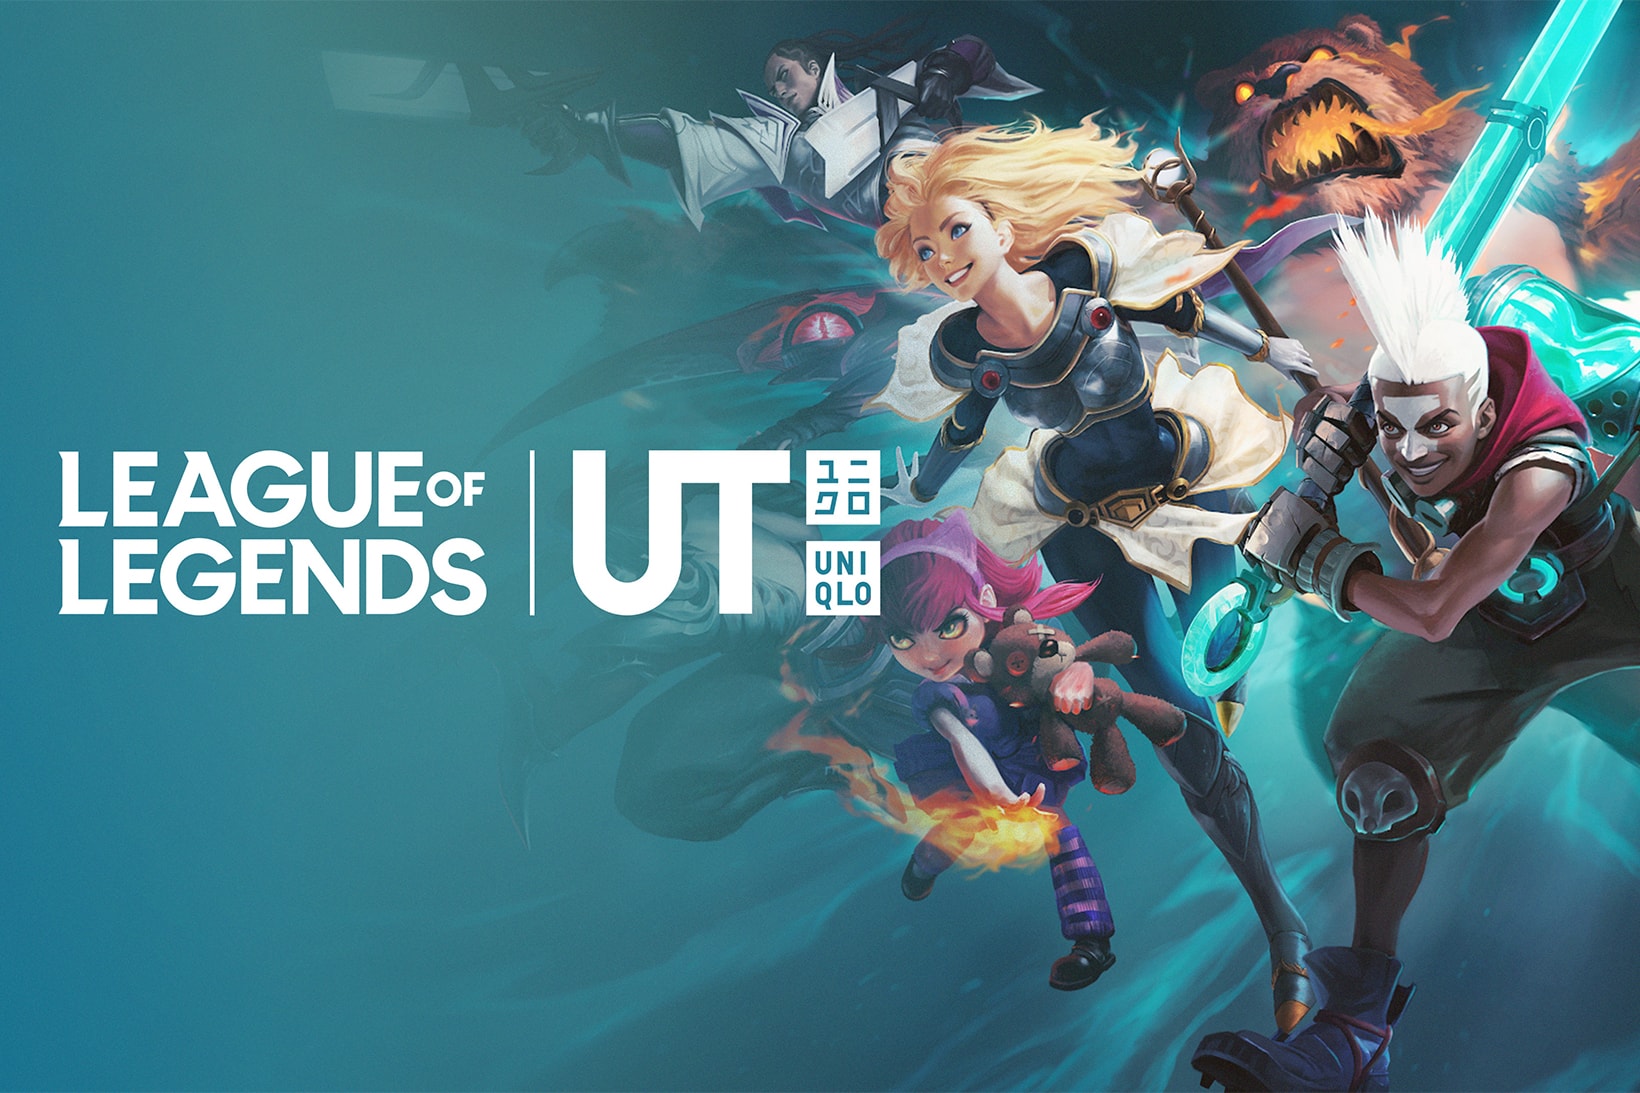 UNIQLO UT Announces League of Legends Collection